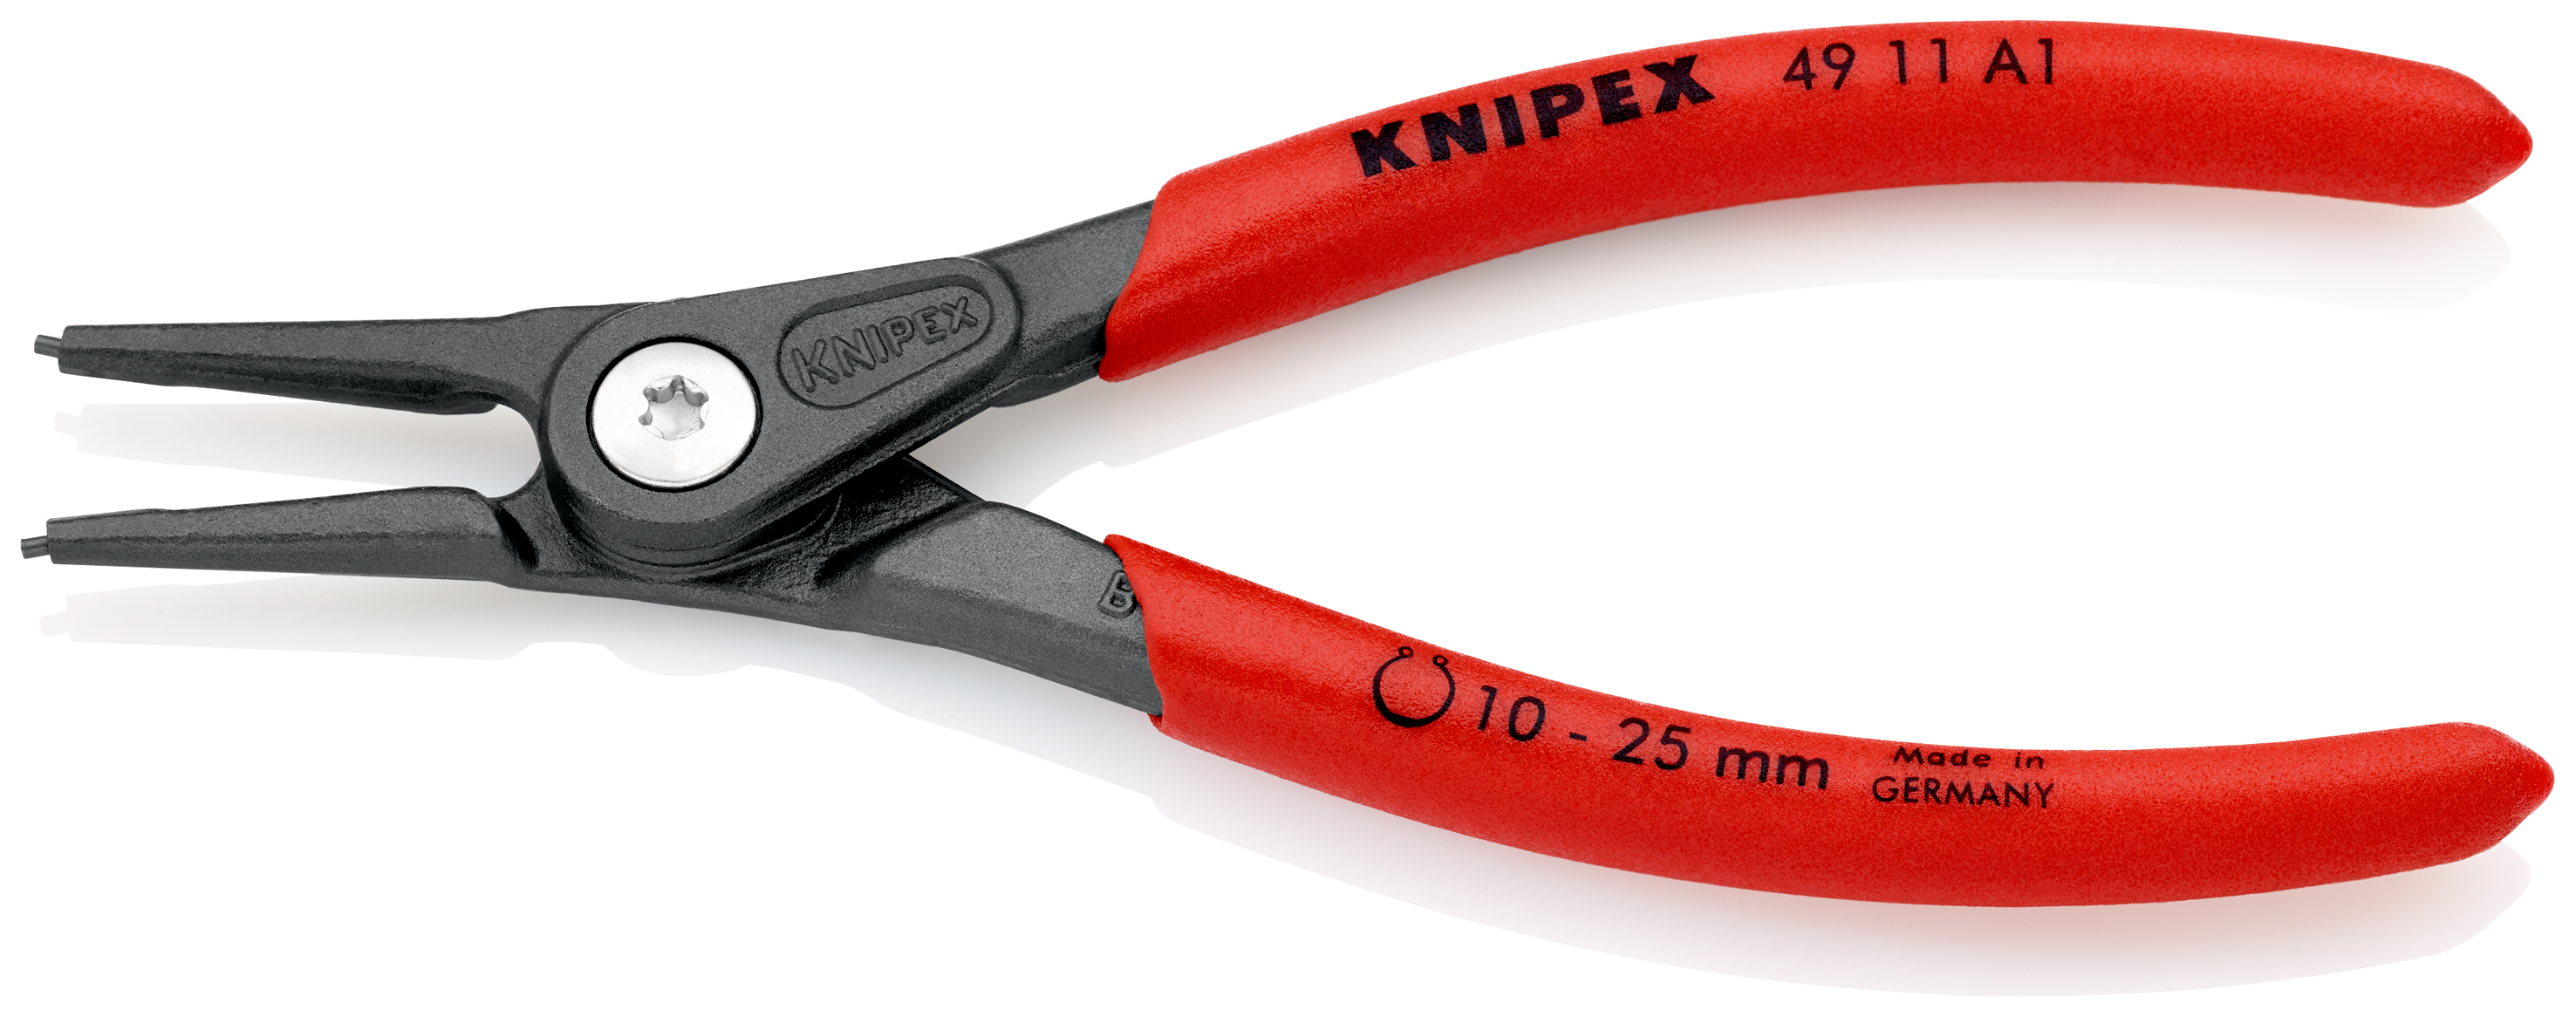 Knipex 4911A1 Cleste pentru inele de siguranță de interior, lungime 140 mm